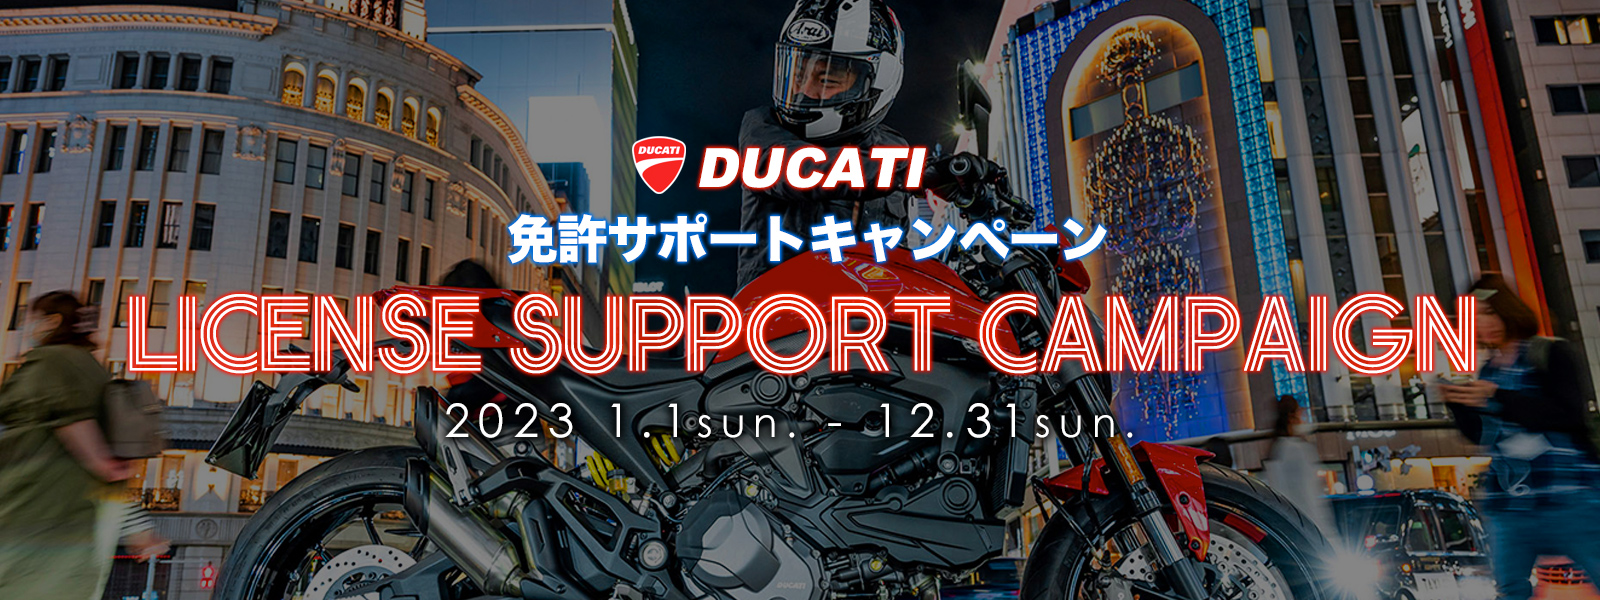 DUCATI 免許サポートキャンペーン